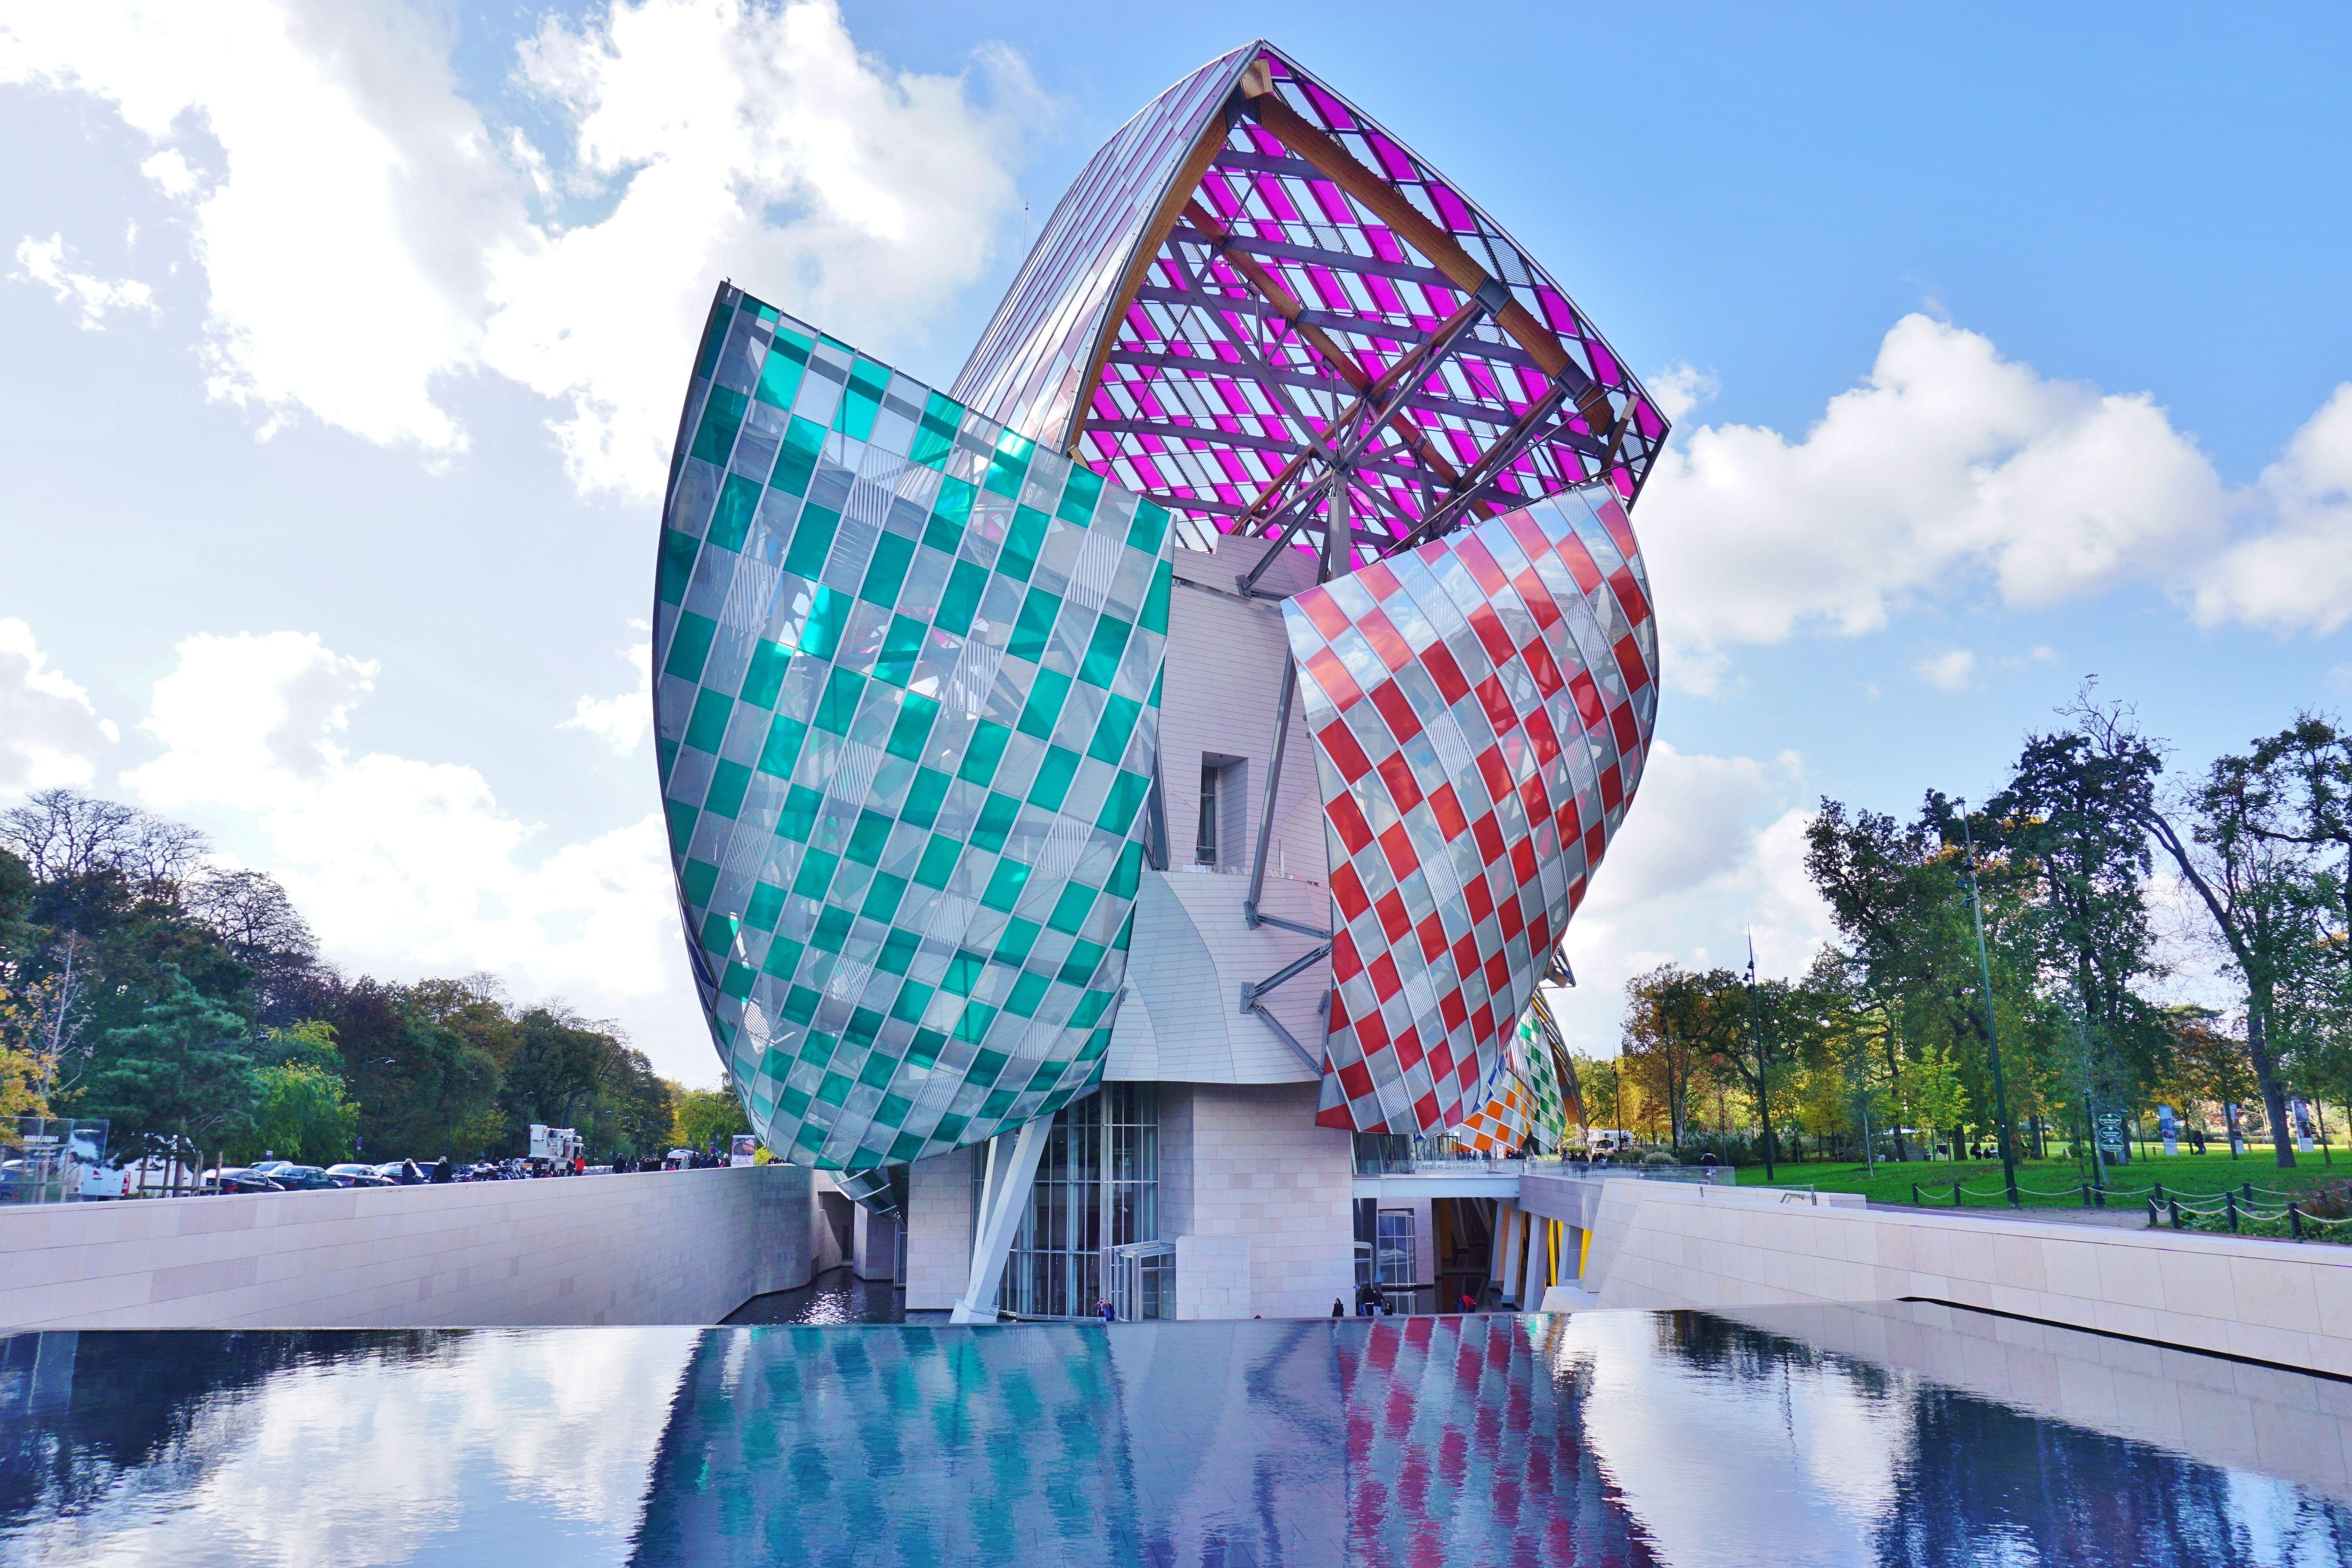 The Fondation Louis Vuitton: An Architectural Masterpiece - Paris Perfect